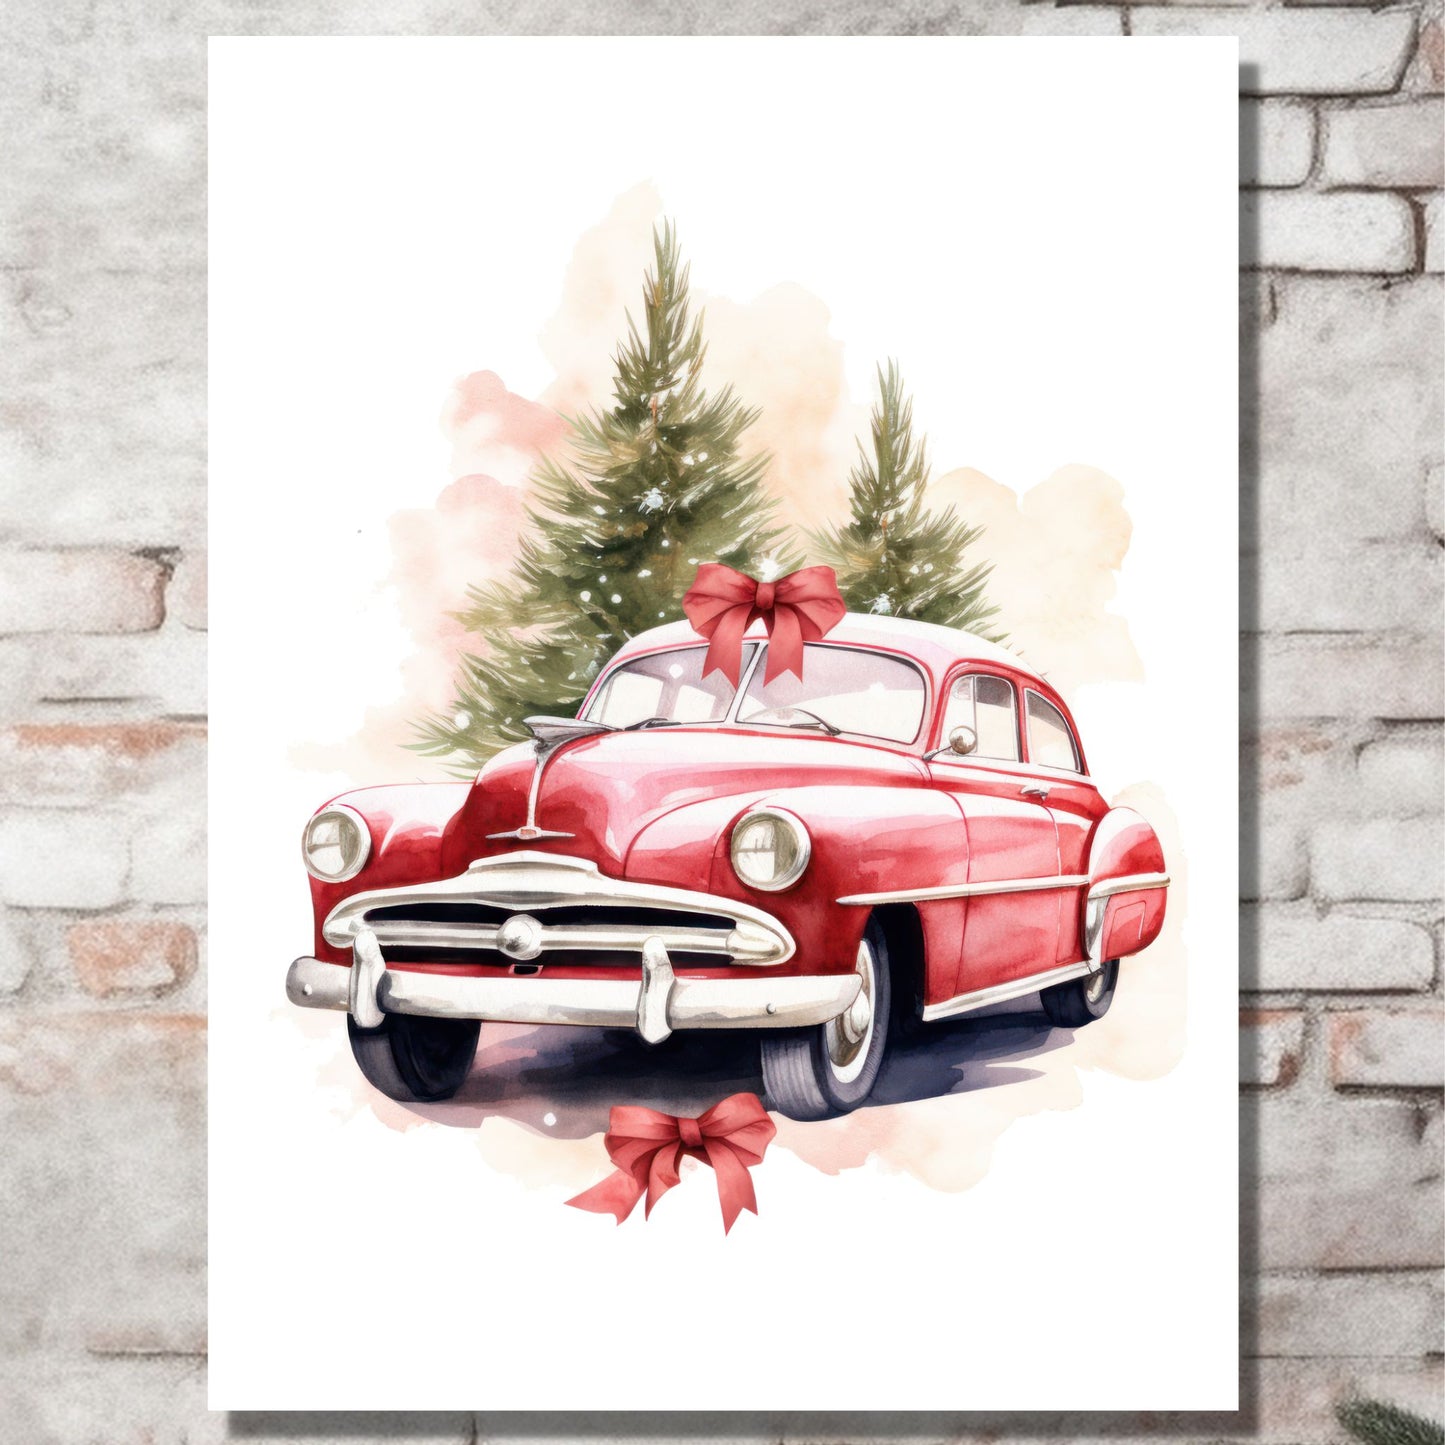 Plakat og lerret med grafisk julemotiv av gammel, rød veteranbil. Bilen kjører i en skog.  På bildet henger motivet på lerret på en murvegg.